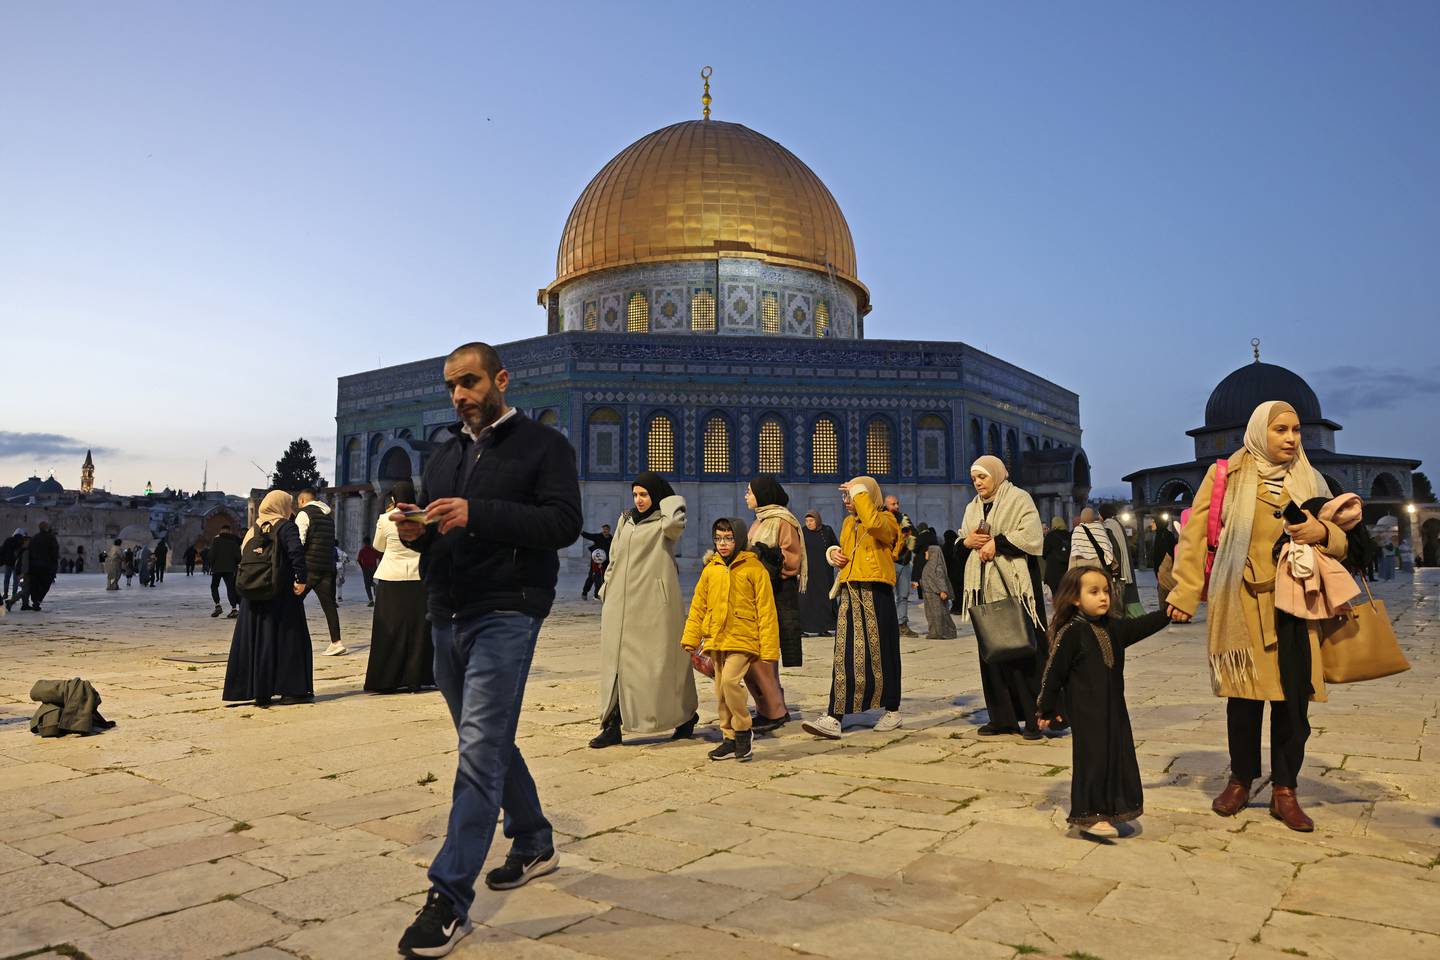 La gente pasa junto a la Cúpula de la Roca en el recinto de la mezquita de Al-Aqsa antes del inicio del mes sagrado de ayuno islámico del Ramadán, en la Ciudad Vieja de Jerusalén.